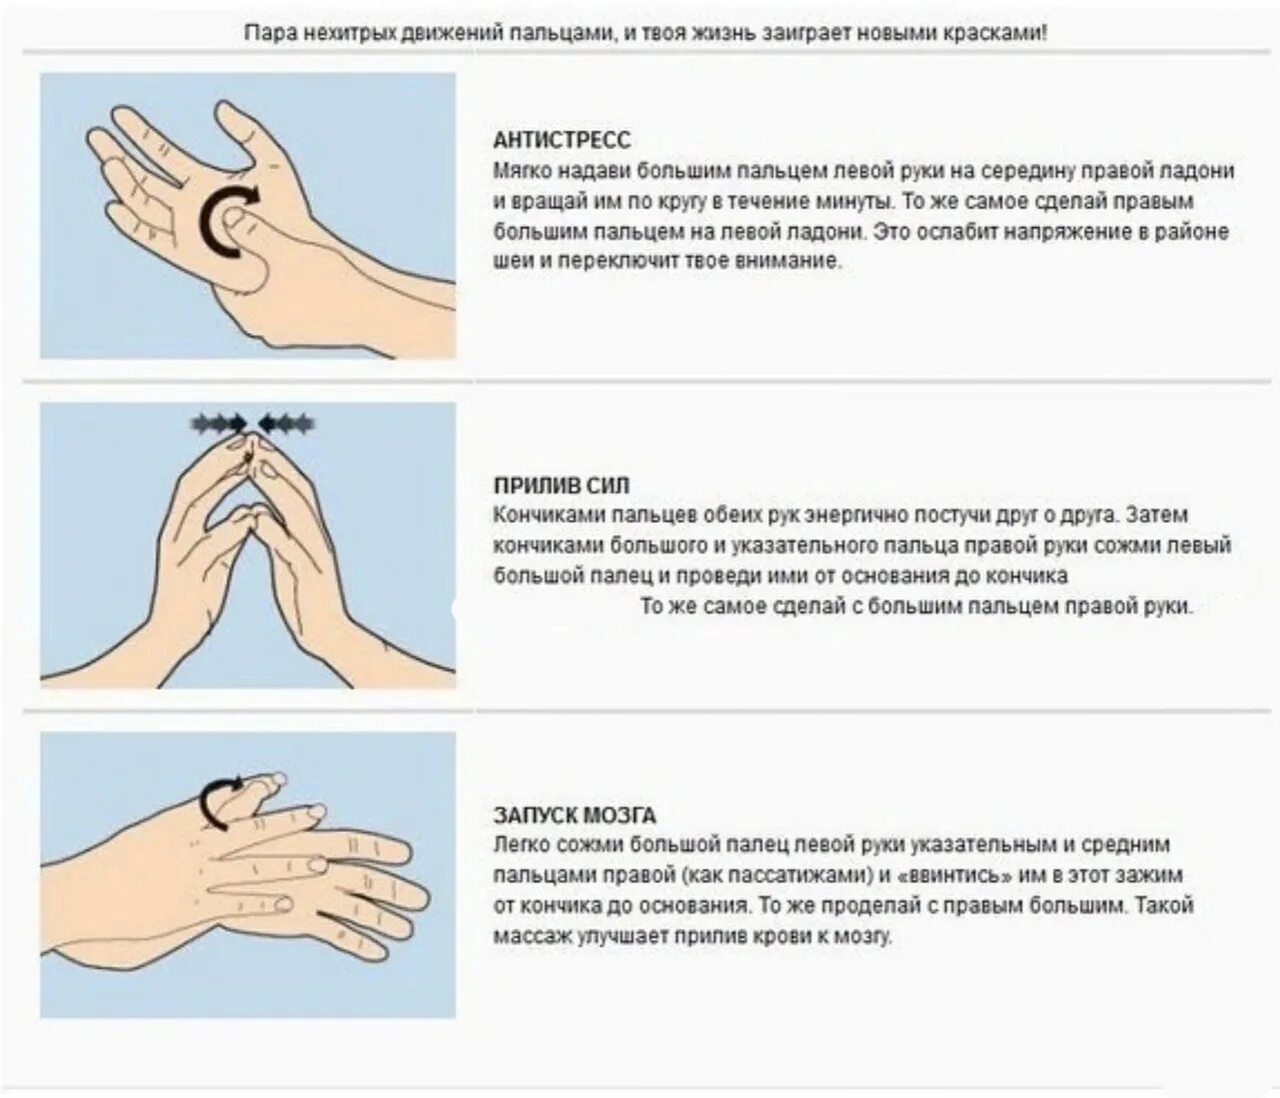 Можно с помощью нажатия. Массаж и самомассаж рук. Упражнения для пальцев. Упражнения для пальцев рук. Самомассаж кистей и пальцев рук.